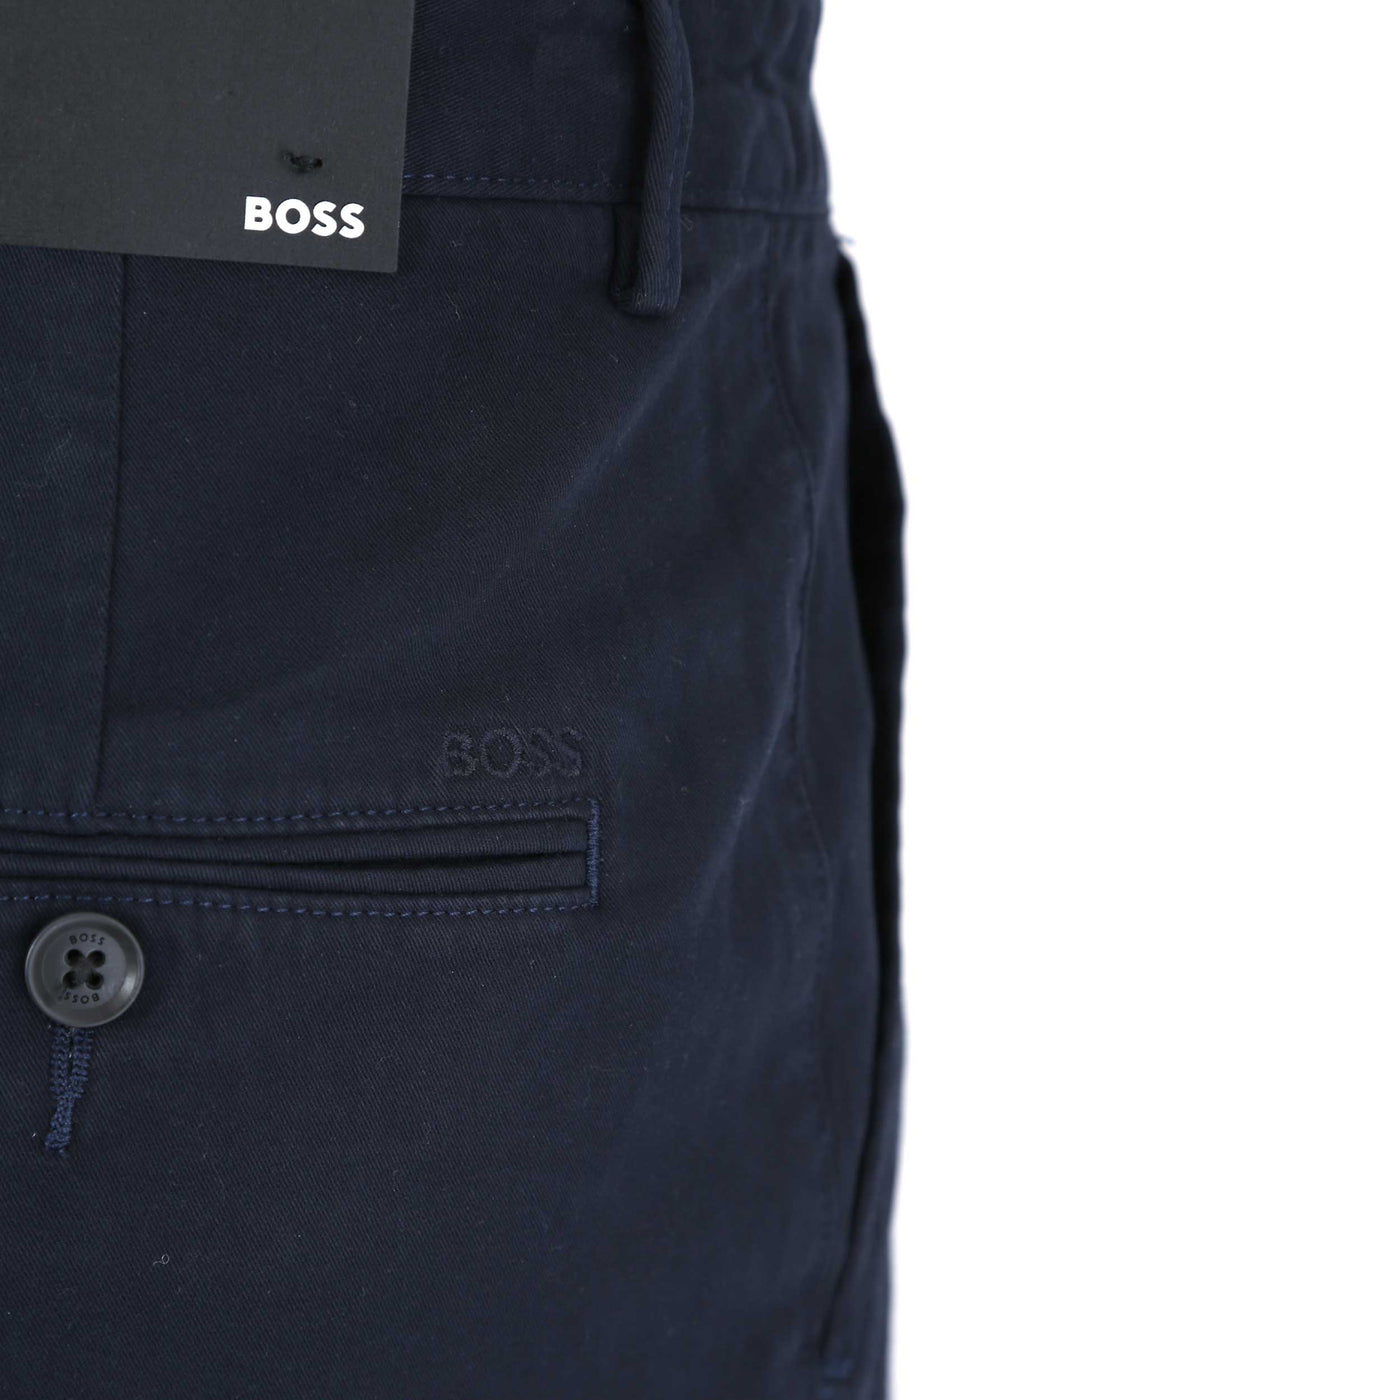 BOSS Slice Short Short in Navy Seat Pocket